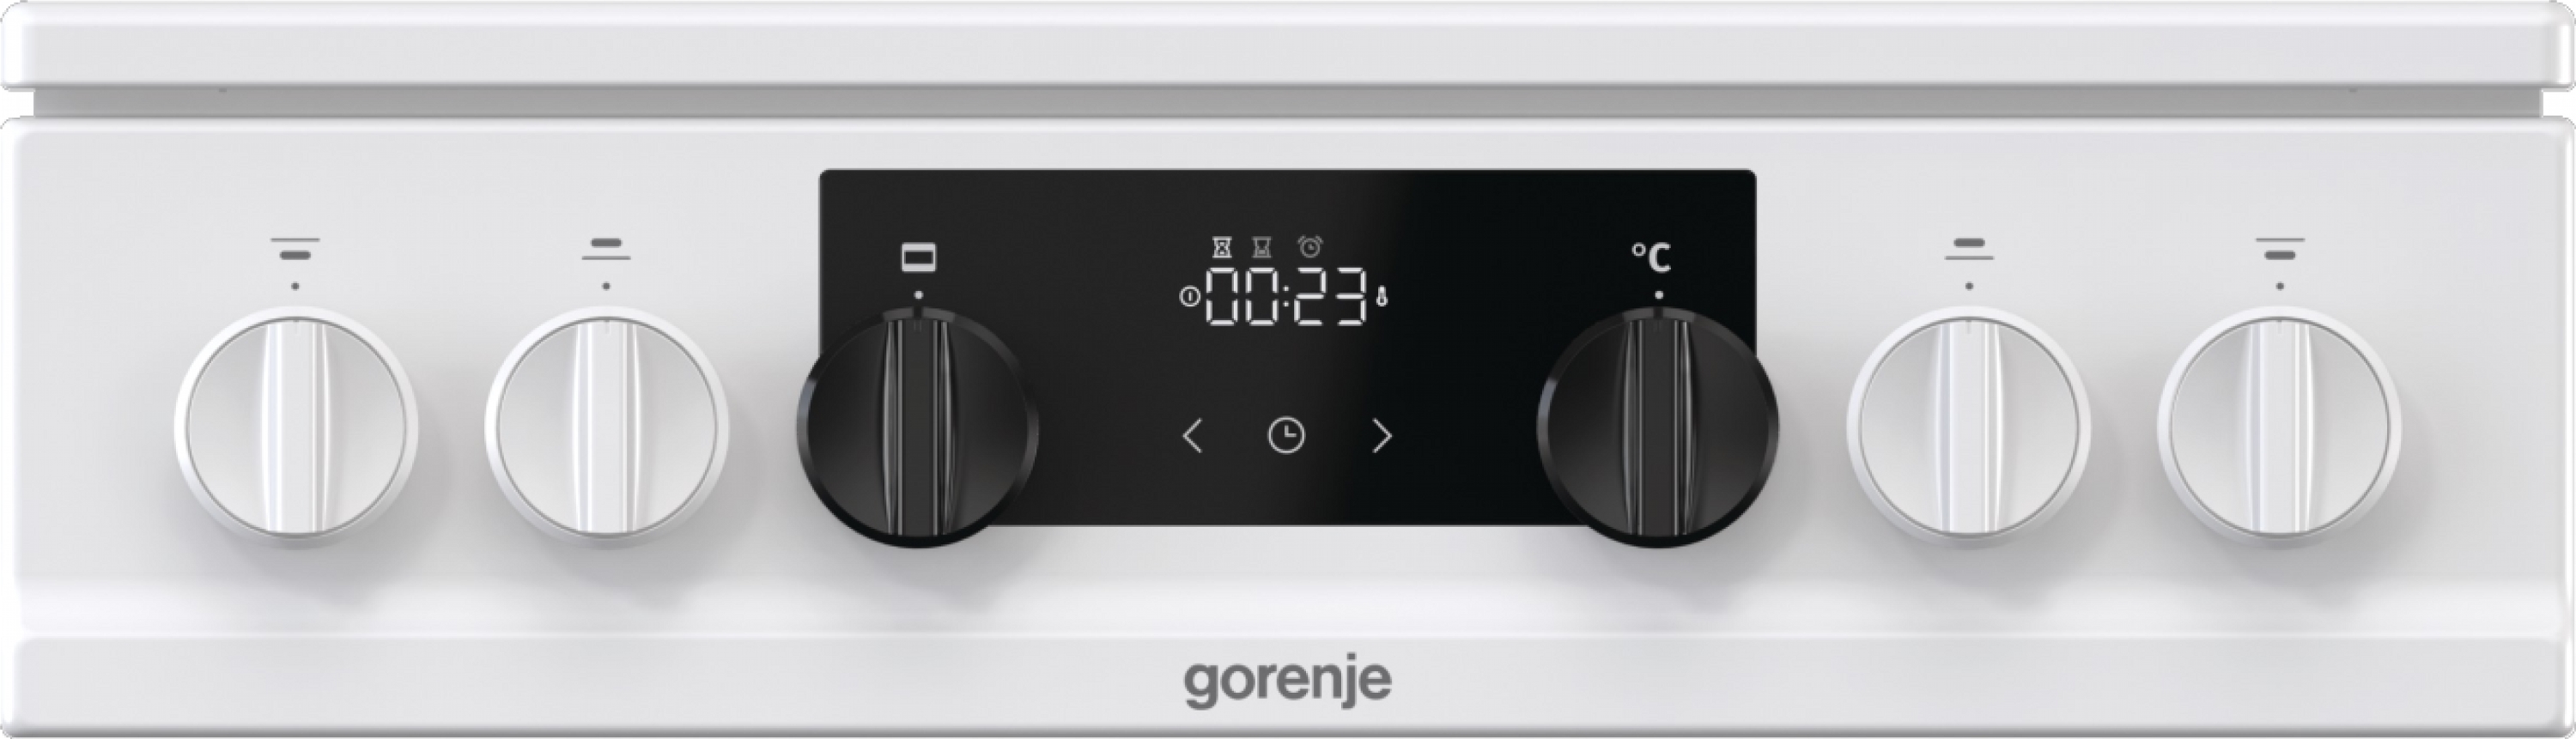 Кухонная плита Gorenje MEKS 5121 W отзывы - изображения 5